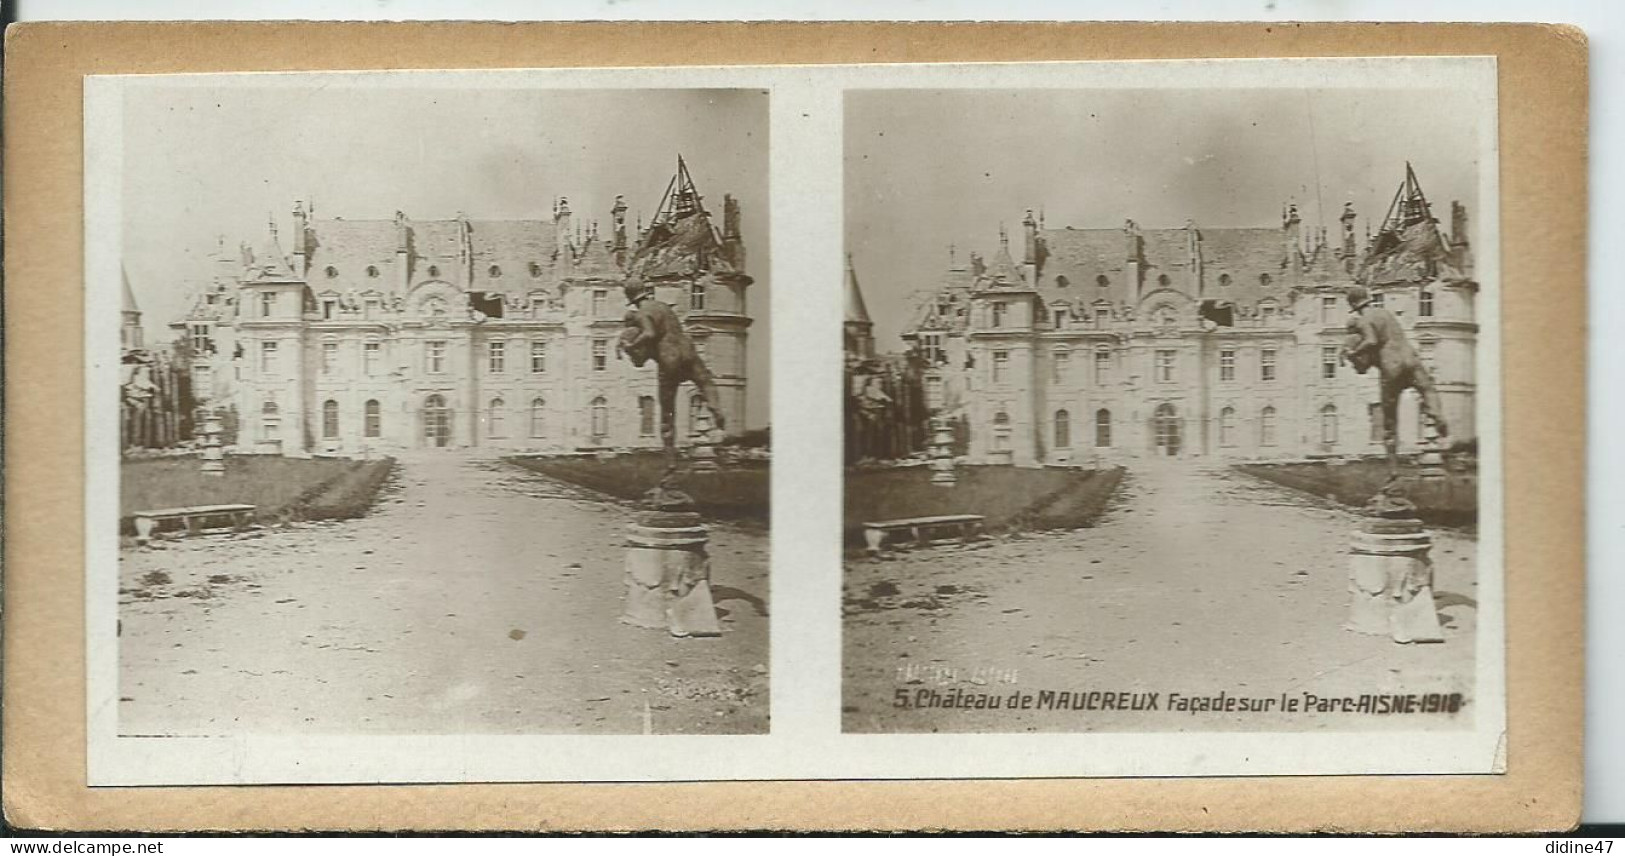 PHOTOS STÉRÉOSCOPIQUES -  Château De MAUCREUX. Façade Sur Le Parc - Photos Stéréoscopiques